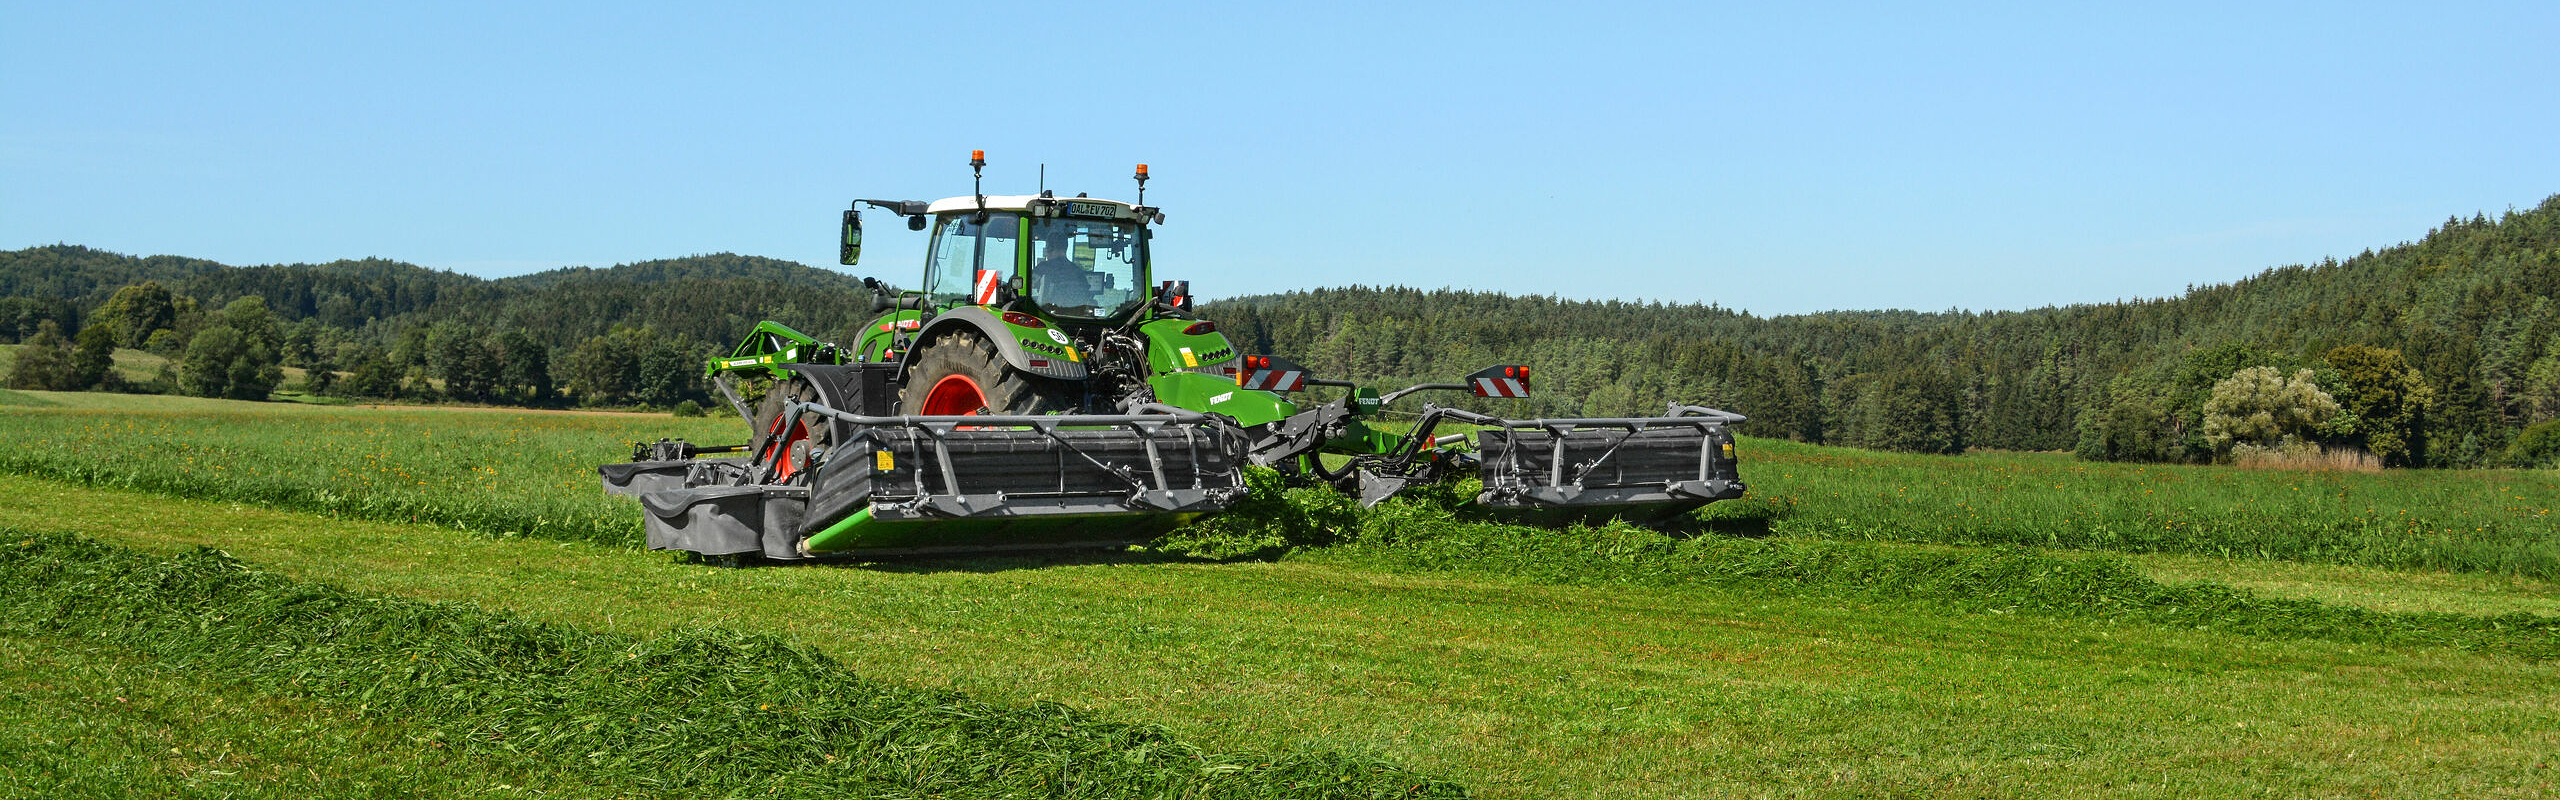 Fendt traktor rohelisel põllul Fendt Sliceriga koristustöödel